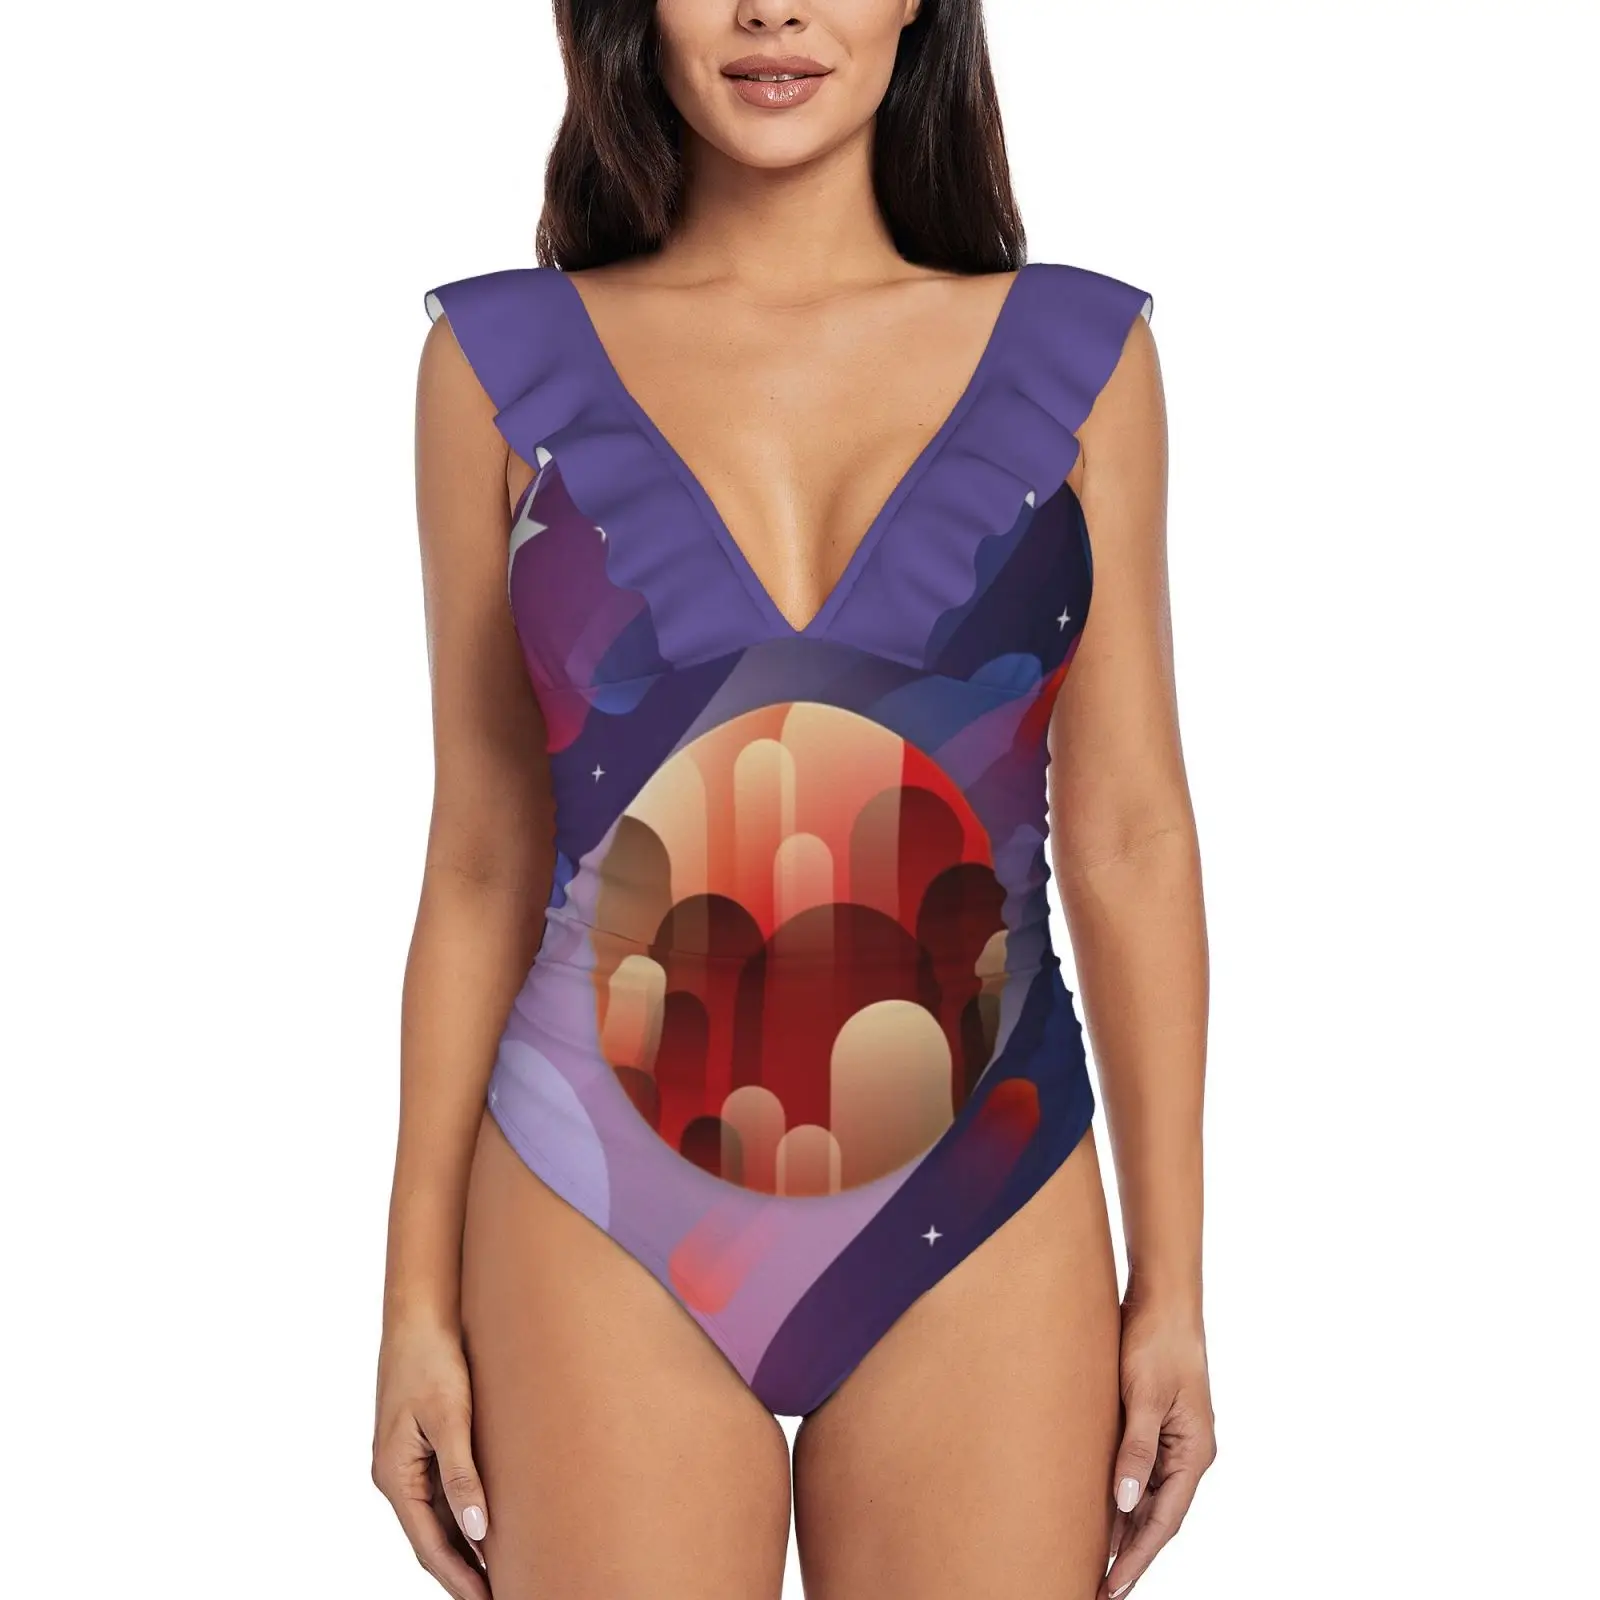 

Цельный купальник Mars с рюшами, женский купальник, монокини с пуш-ап, сексуальный купальный костюм с принтом, везде векторное цифровое искусс...